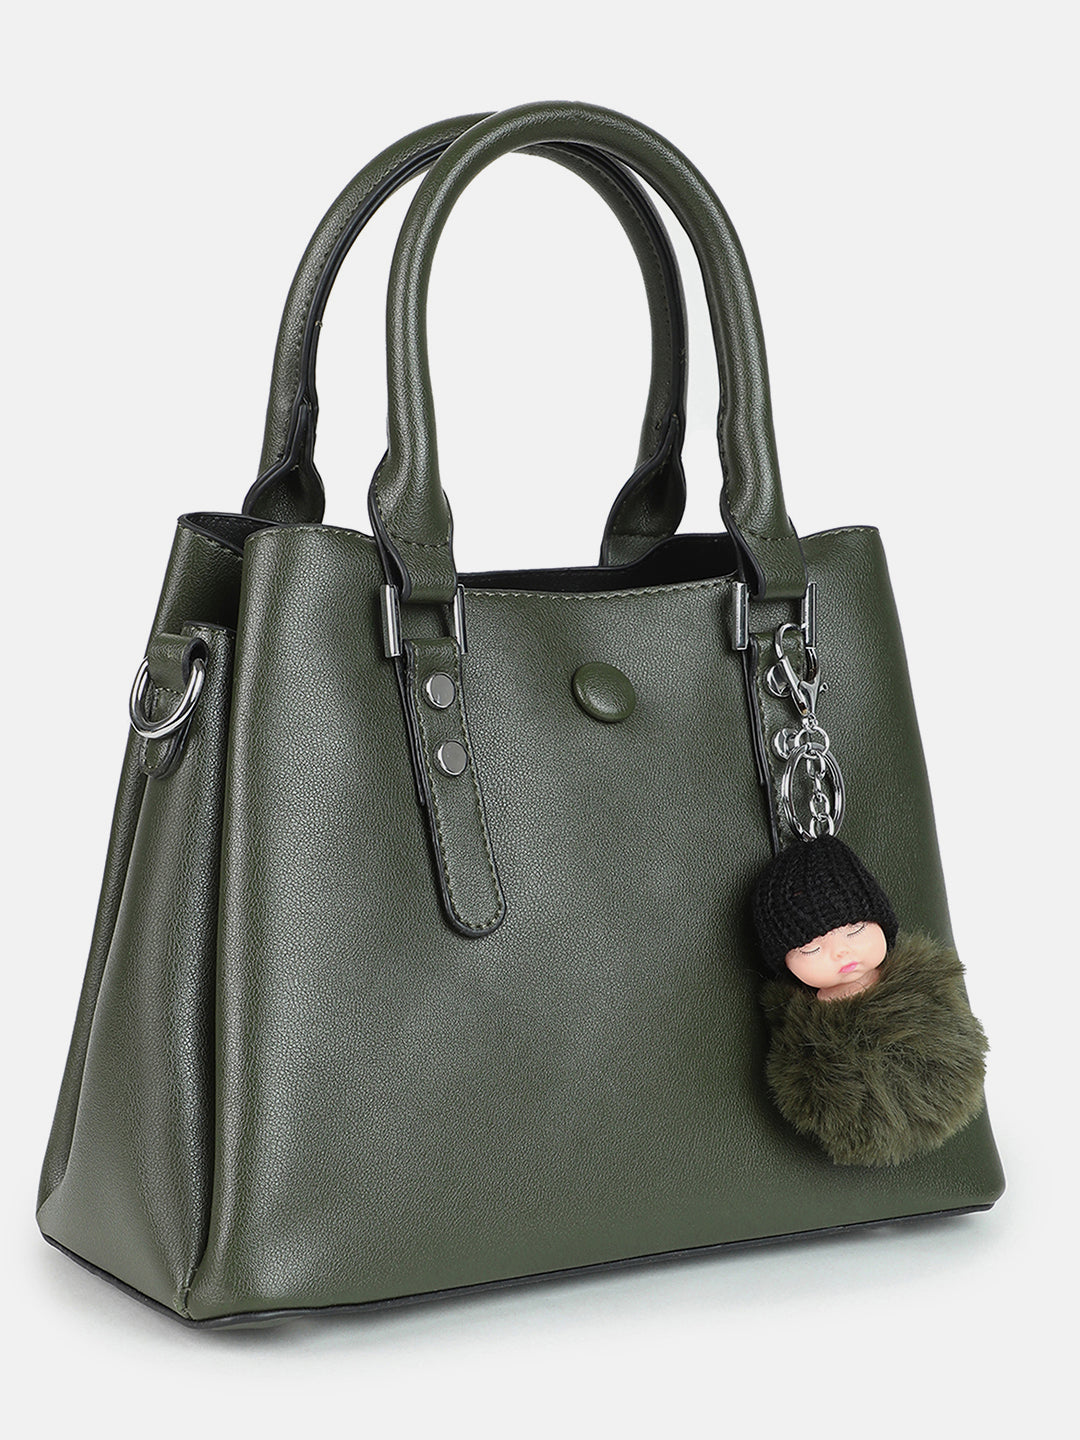 Ebony Elegance Black Handbag